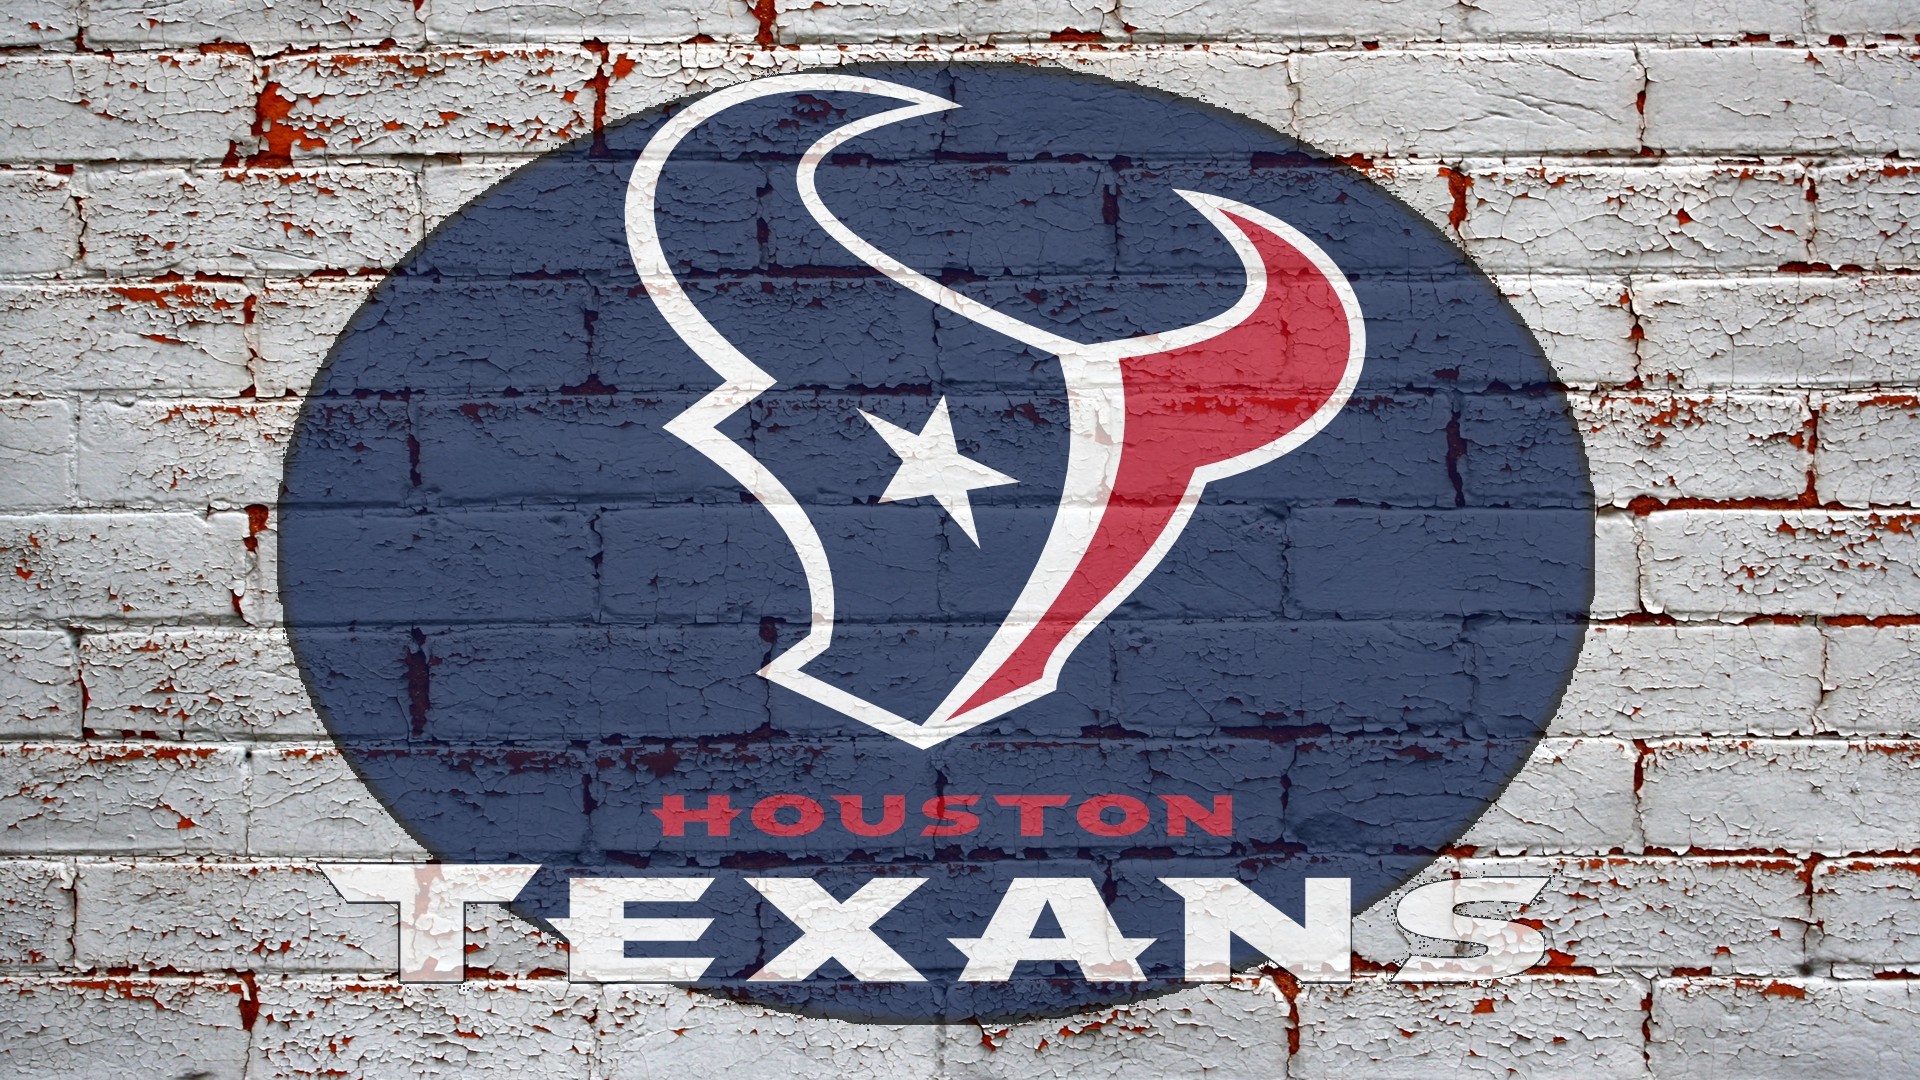 Houston Texans Nfl HD Image Last Added